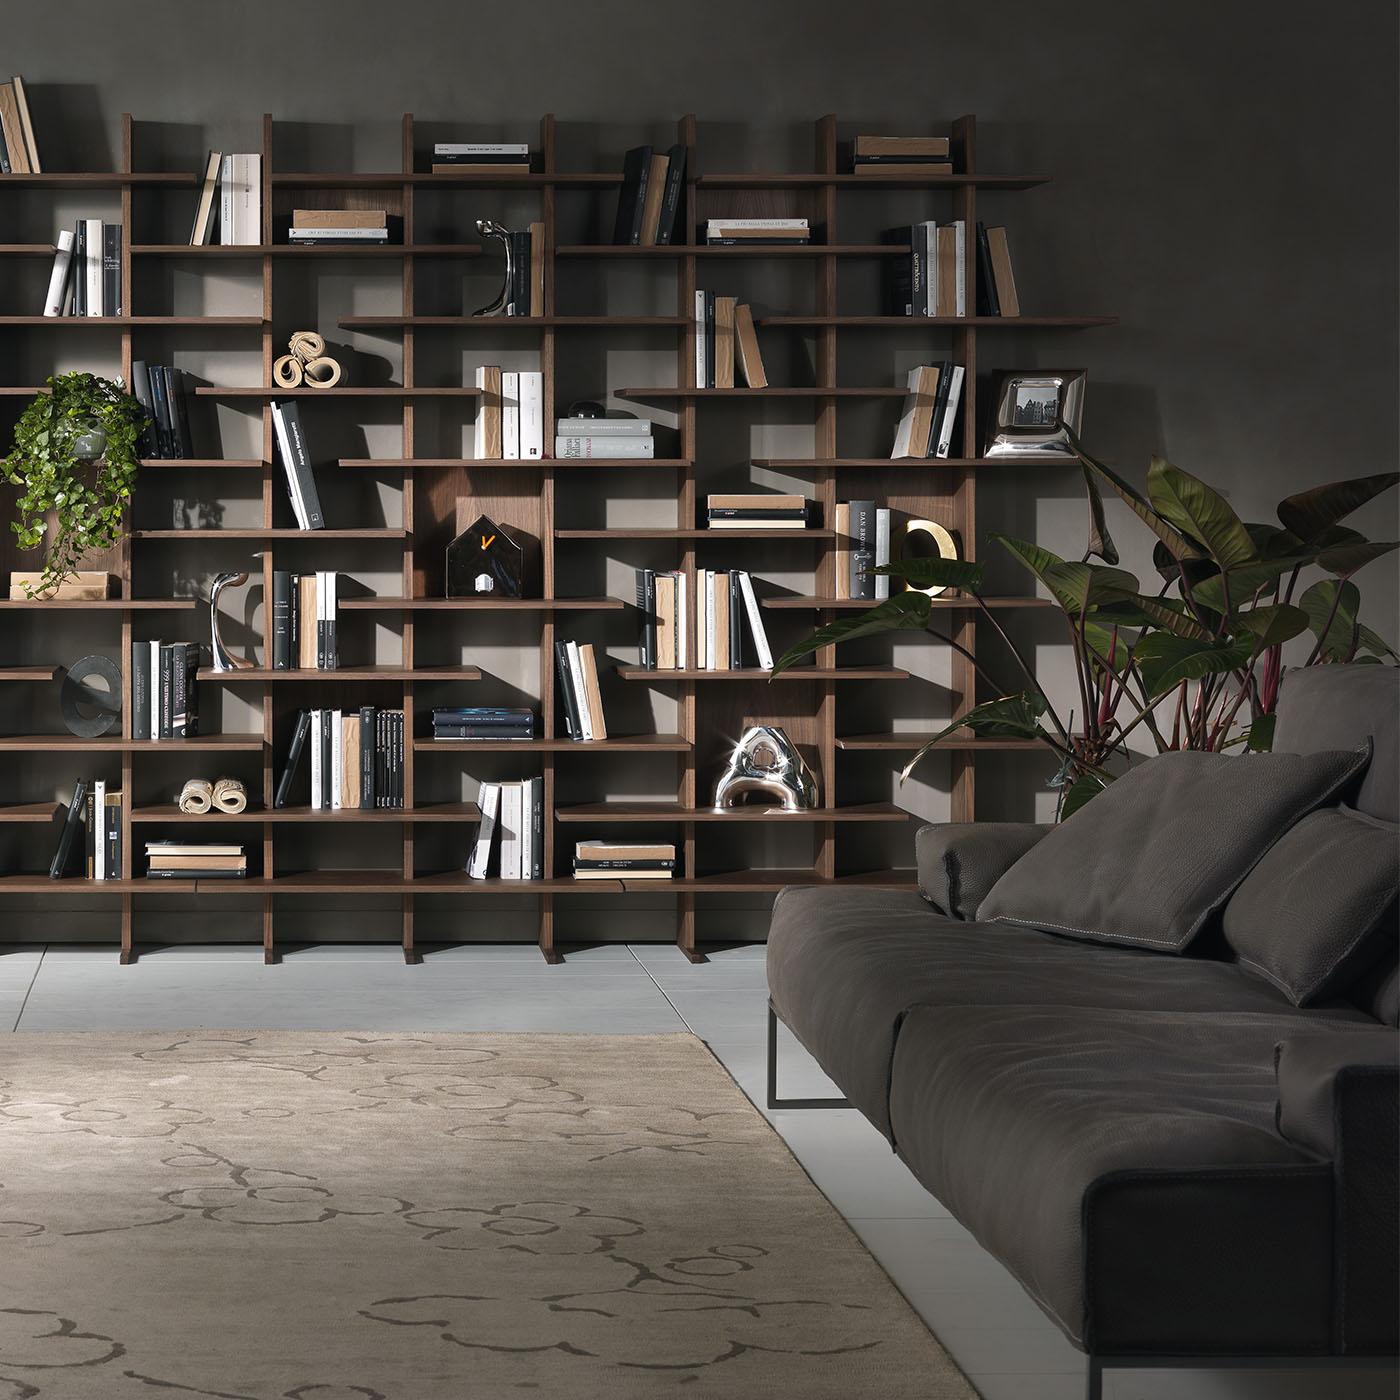 Dieses modulare, zweiseitige Bücherregal wurde von Cesare Arosio und Beatrice Fanchini entworfen und ist eine elegante Ergänzung für einen modernen Wohn- oder Arbeitsbereich. Es zeichnet sich durch ein klares und doch skulpturales zeitgenössisches